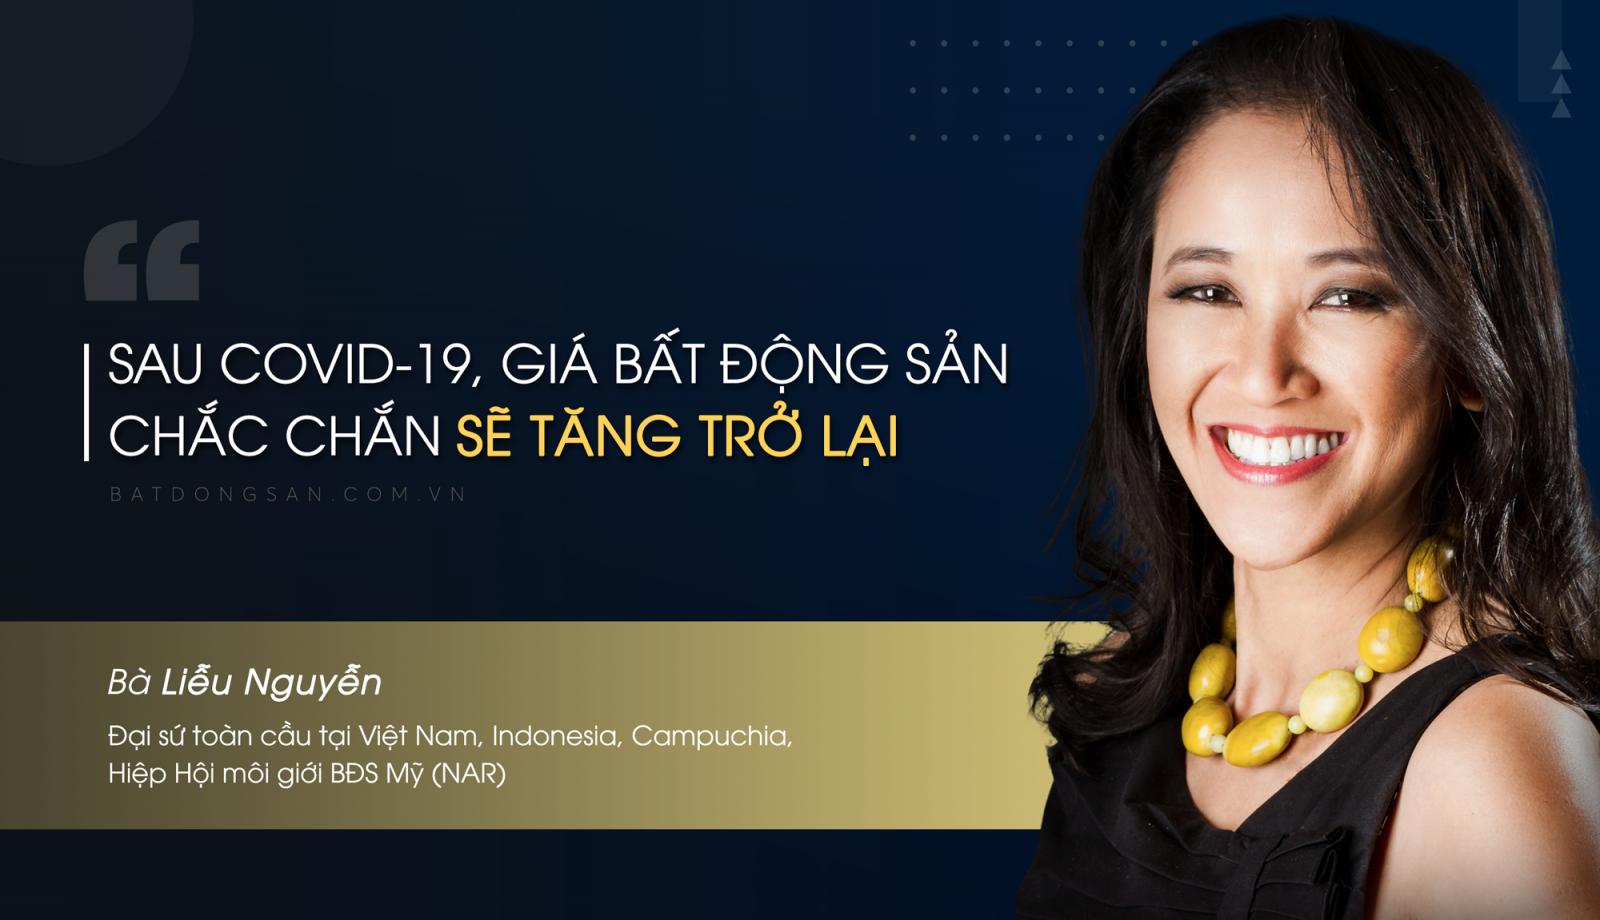 Đại sứ NAR: "Nhà đầu tư BĐS Việt Nam đang đứng trước nhiều cơ hội lớn"